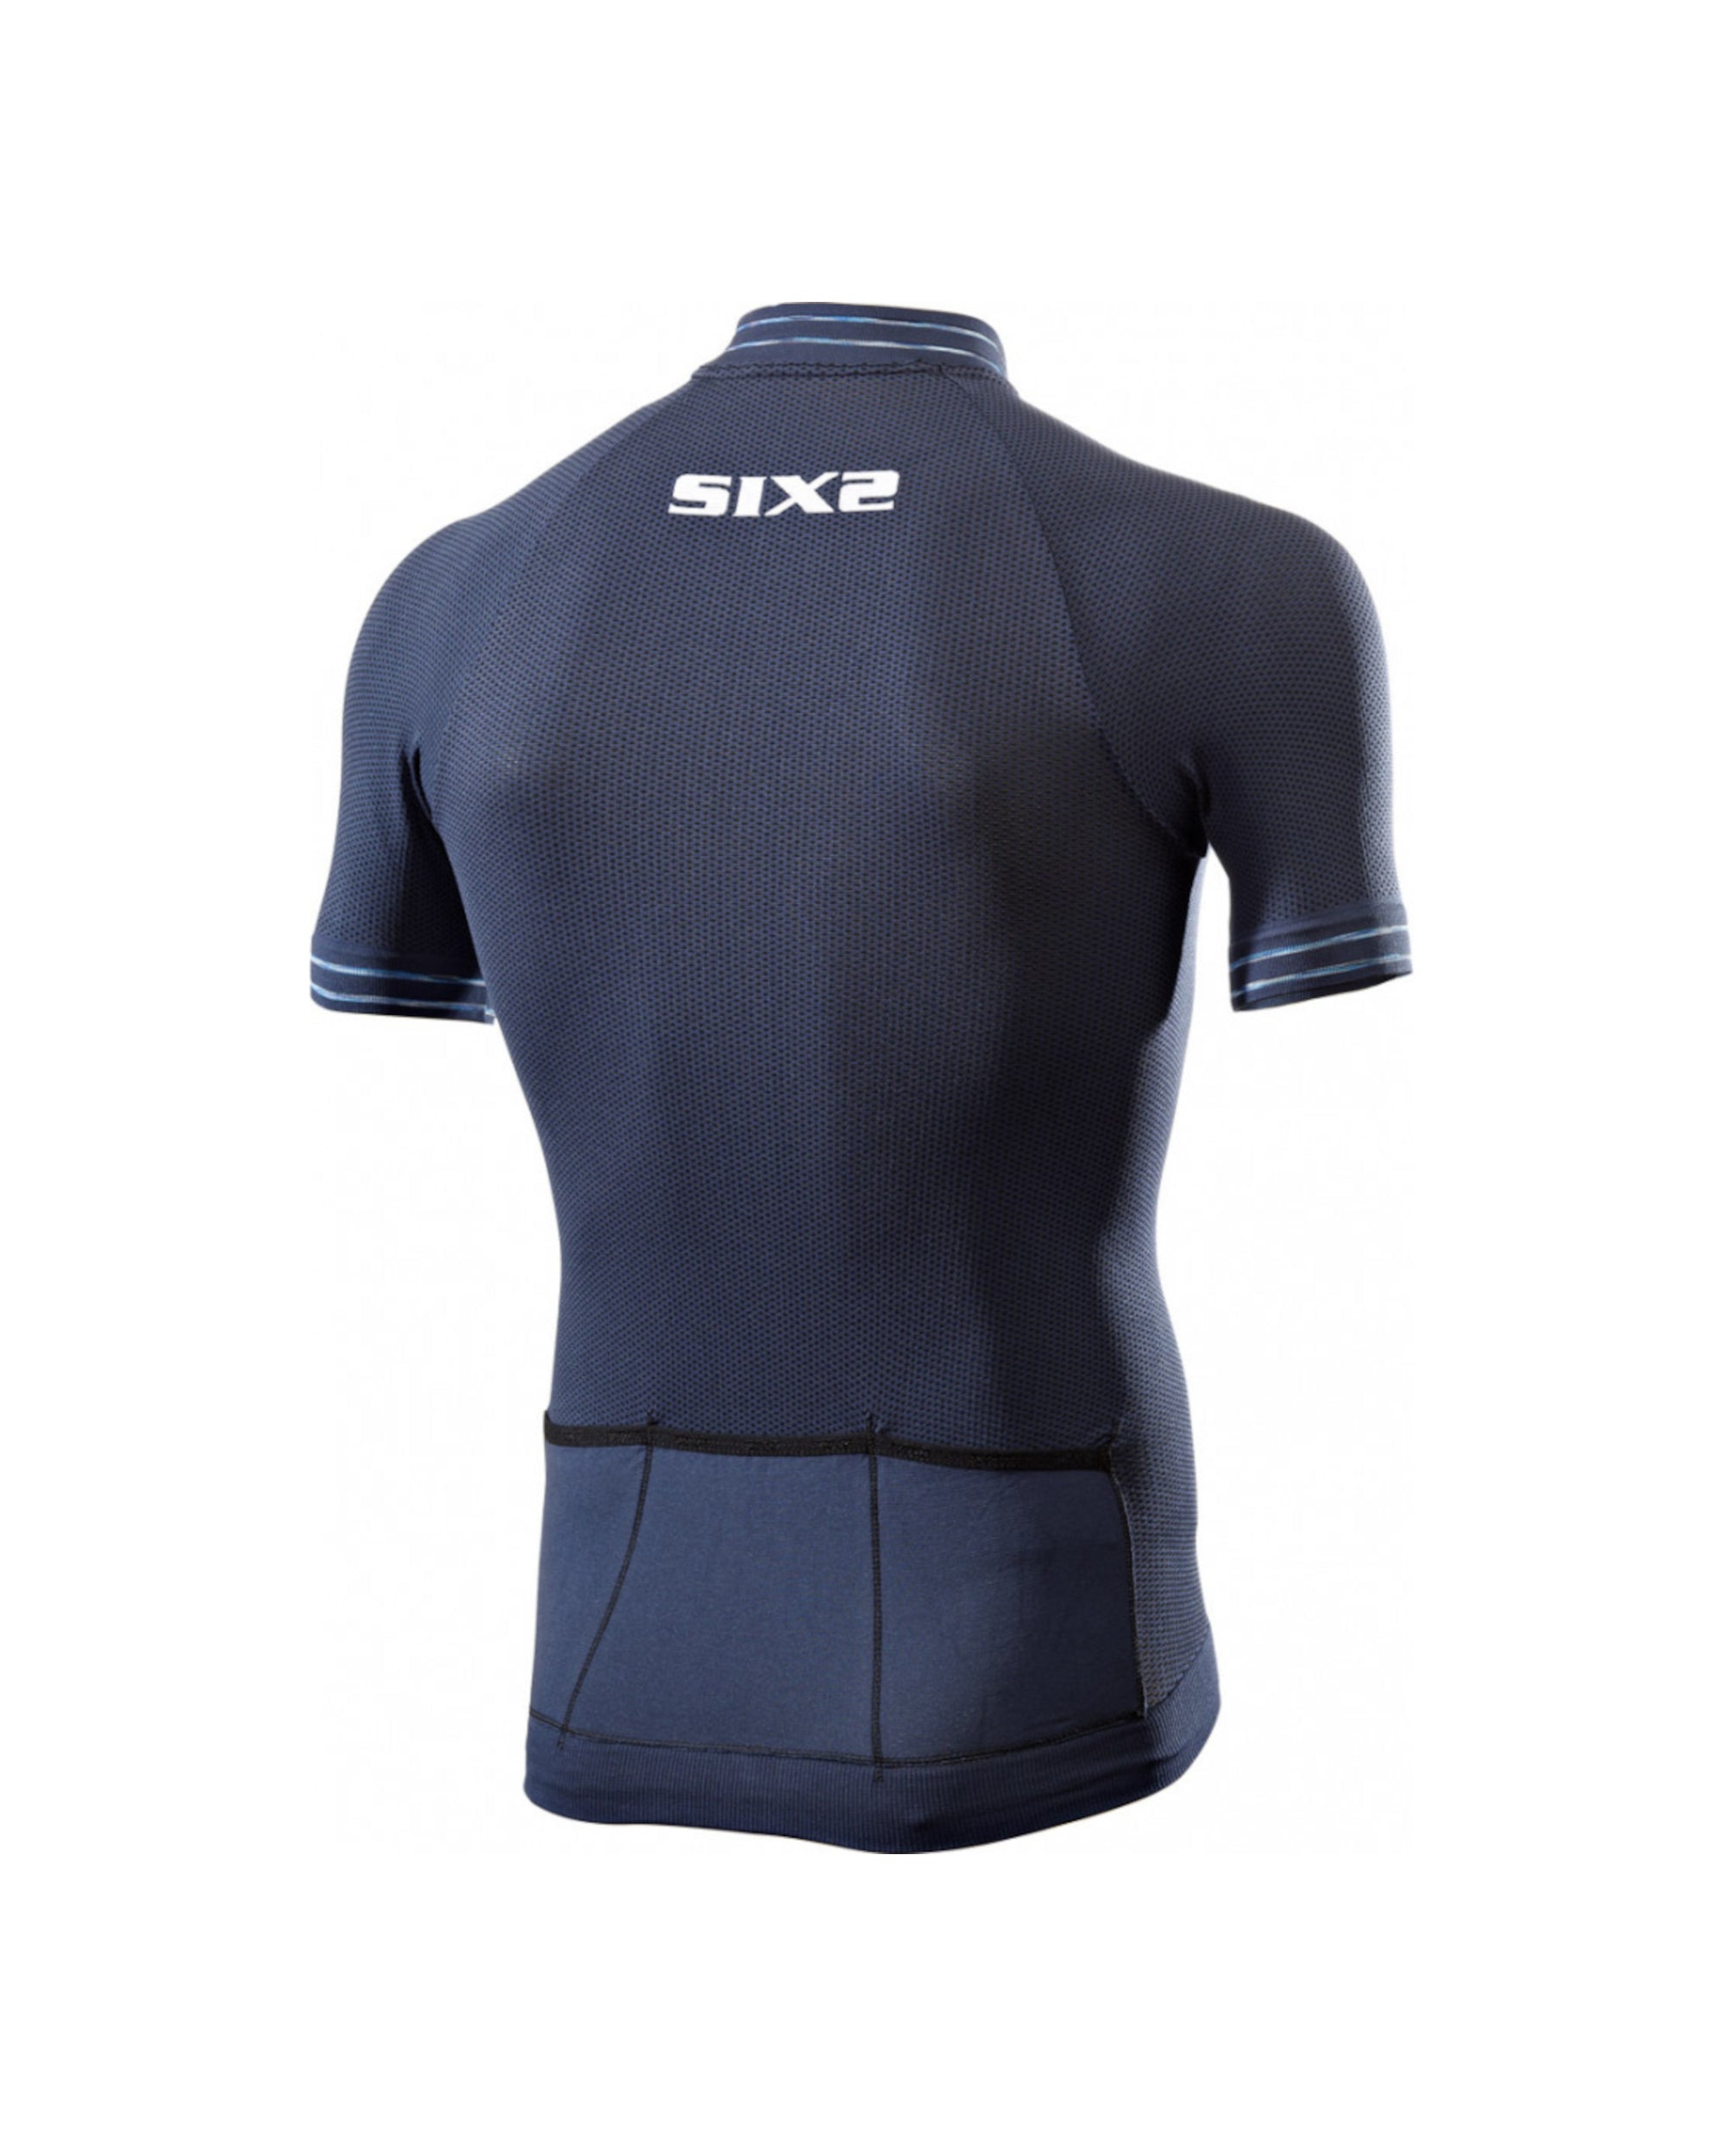 Marškinėliai SIX2 Clima / Avio Light Blue